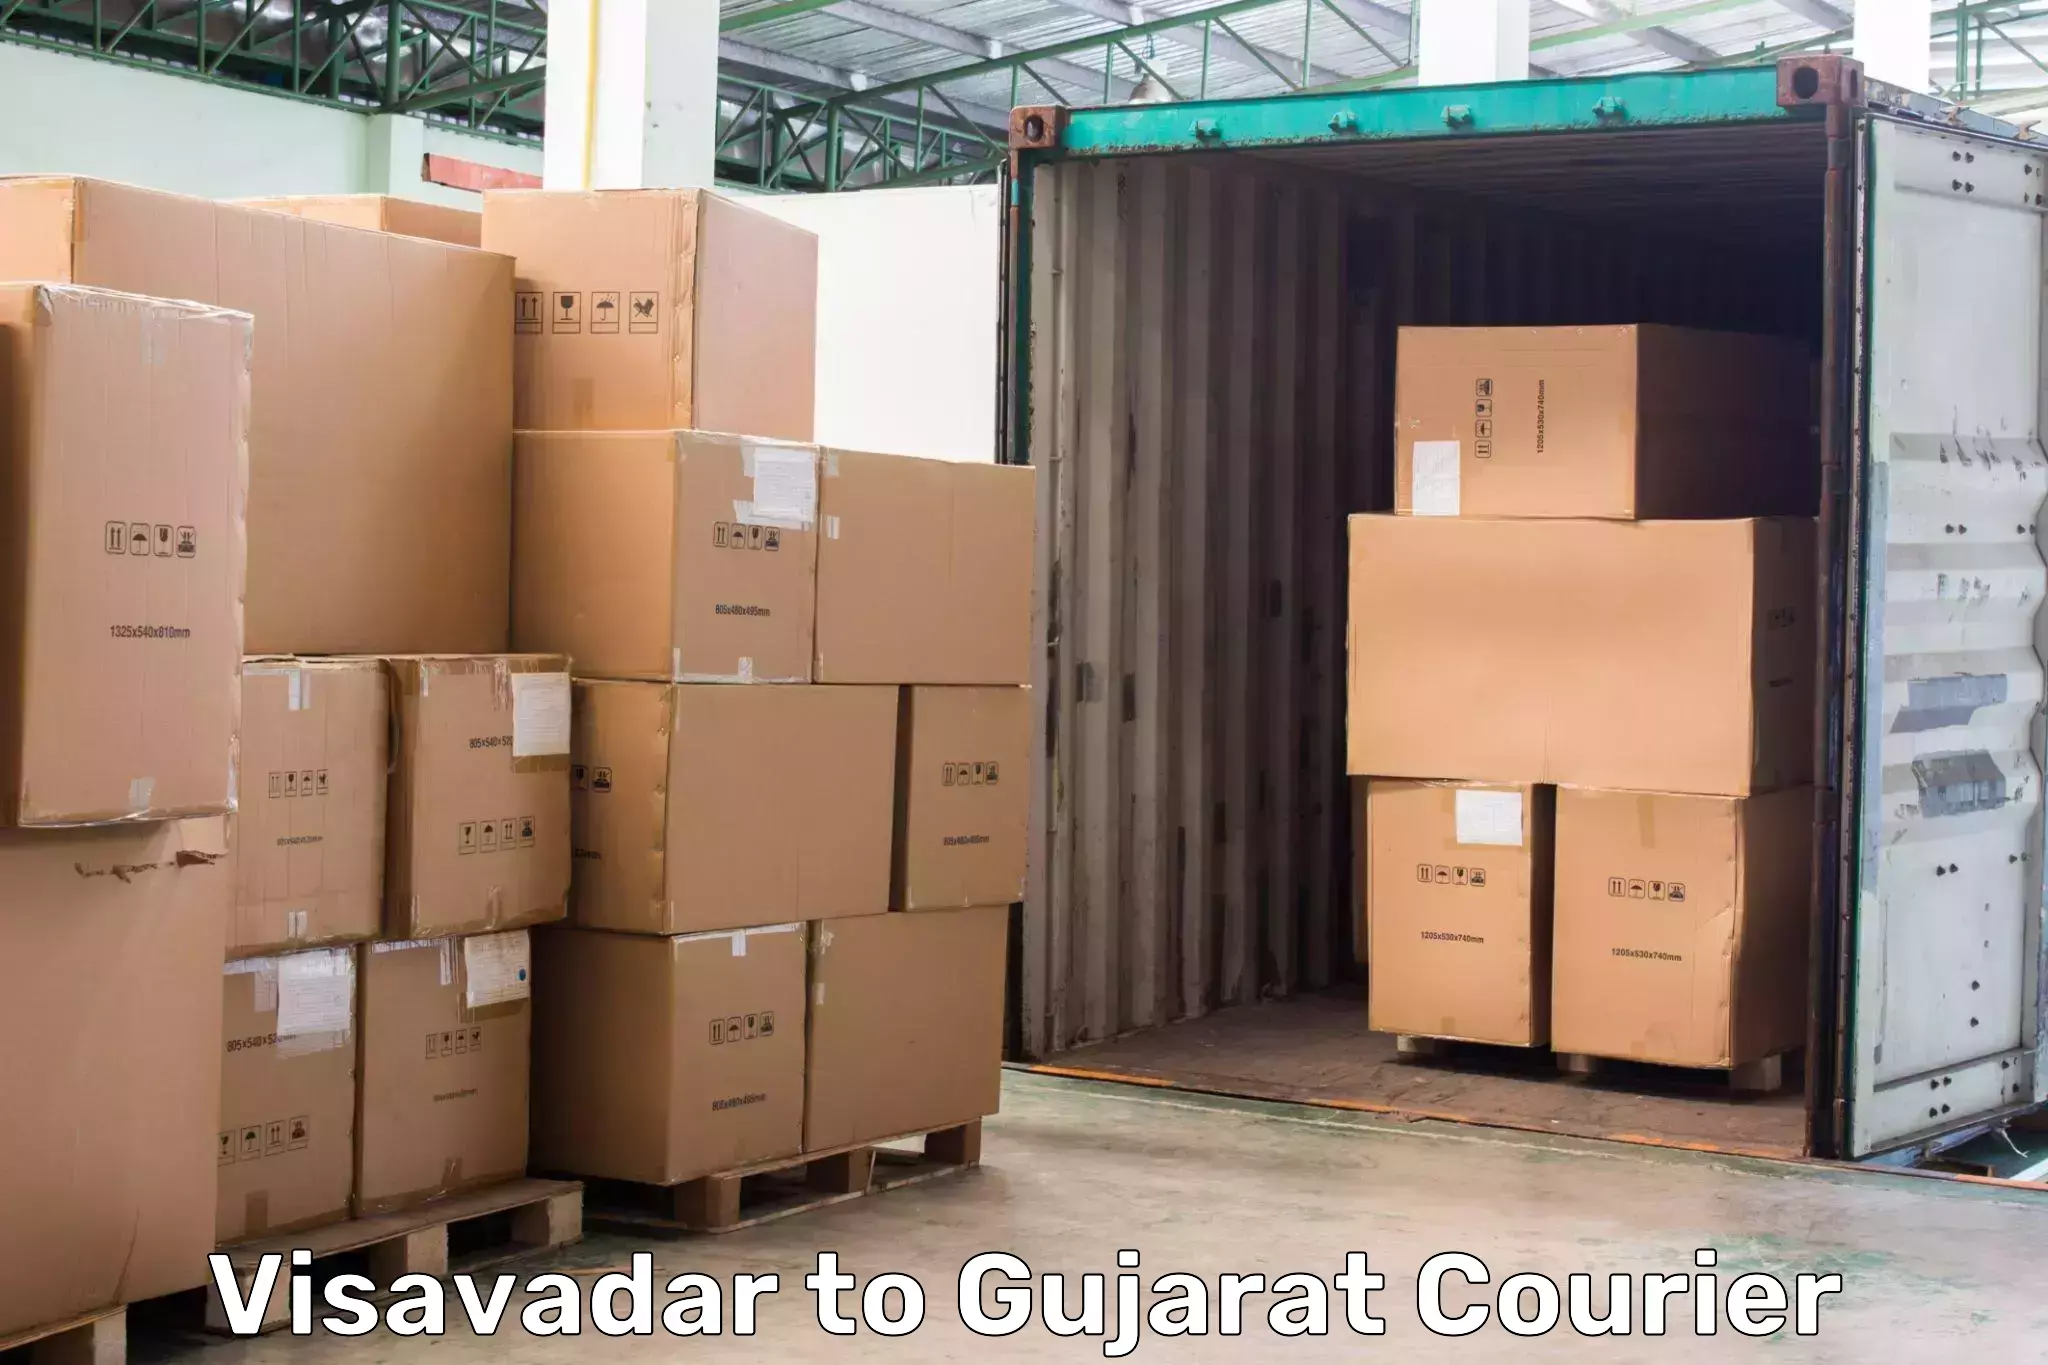 24-hour courier service Visavadar to Porbandar